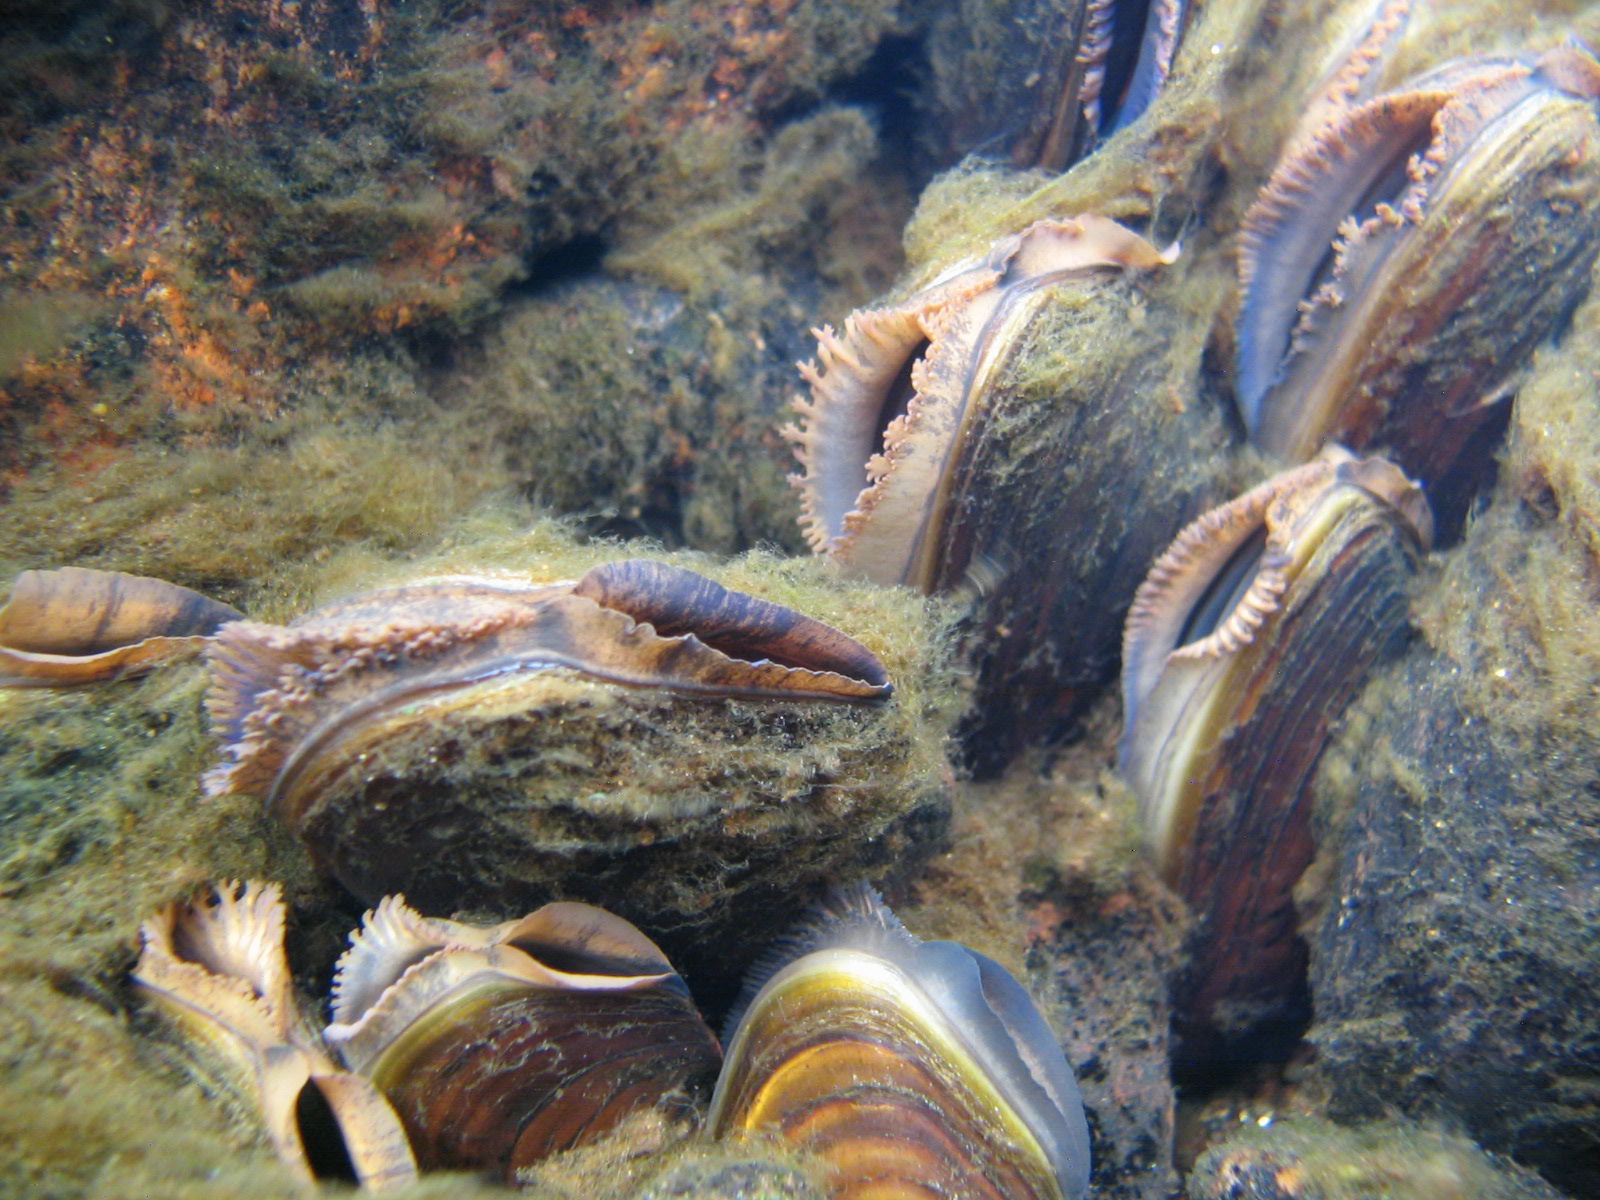 Foto: Bilde av elvemuslinger i vannet.